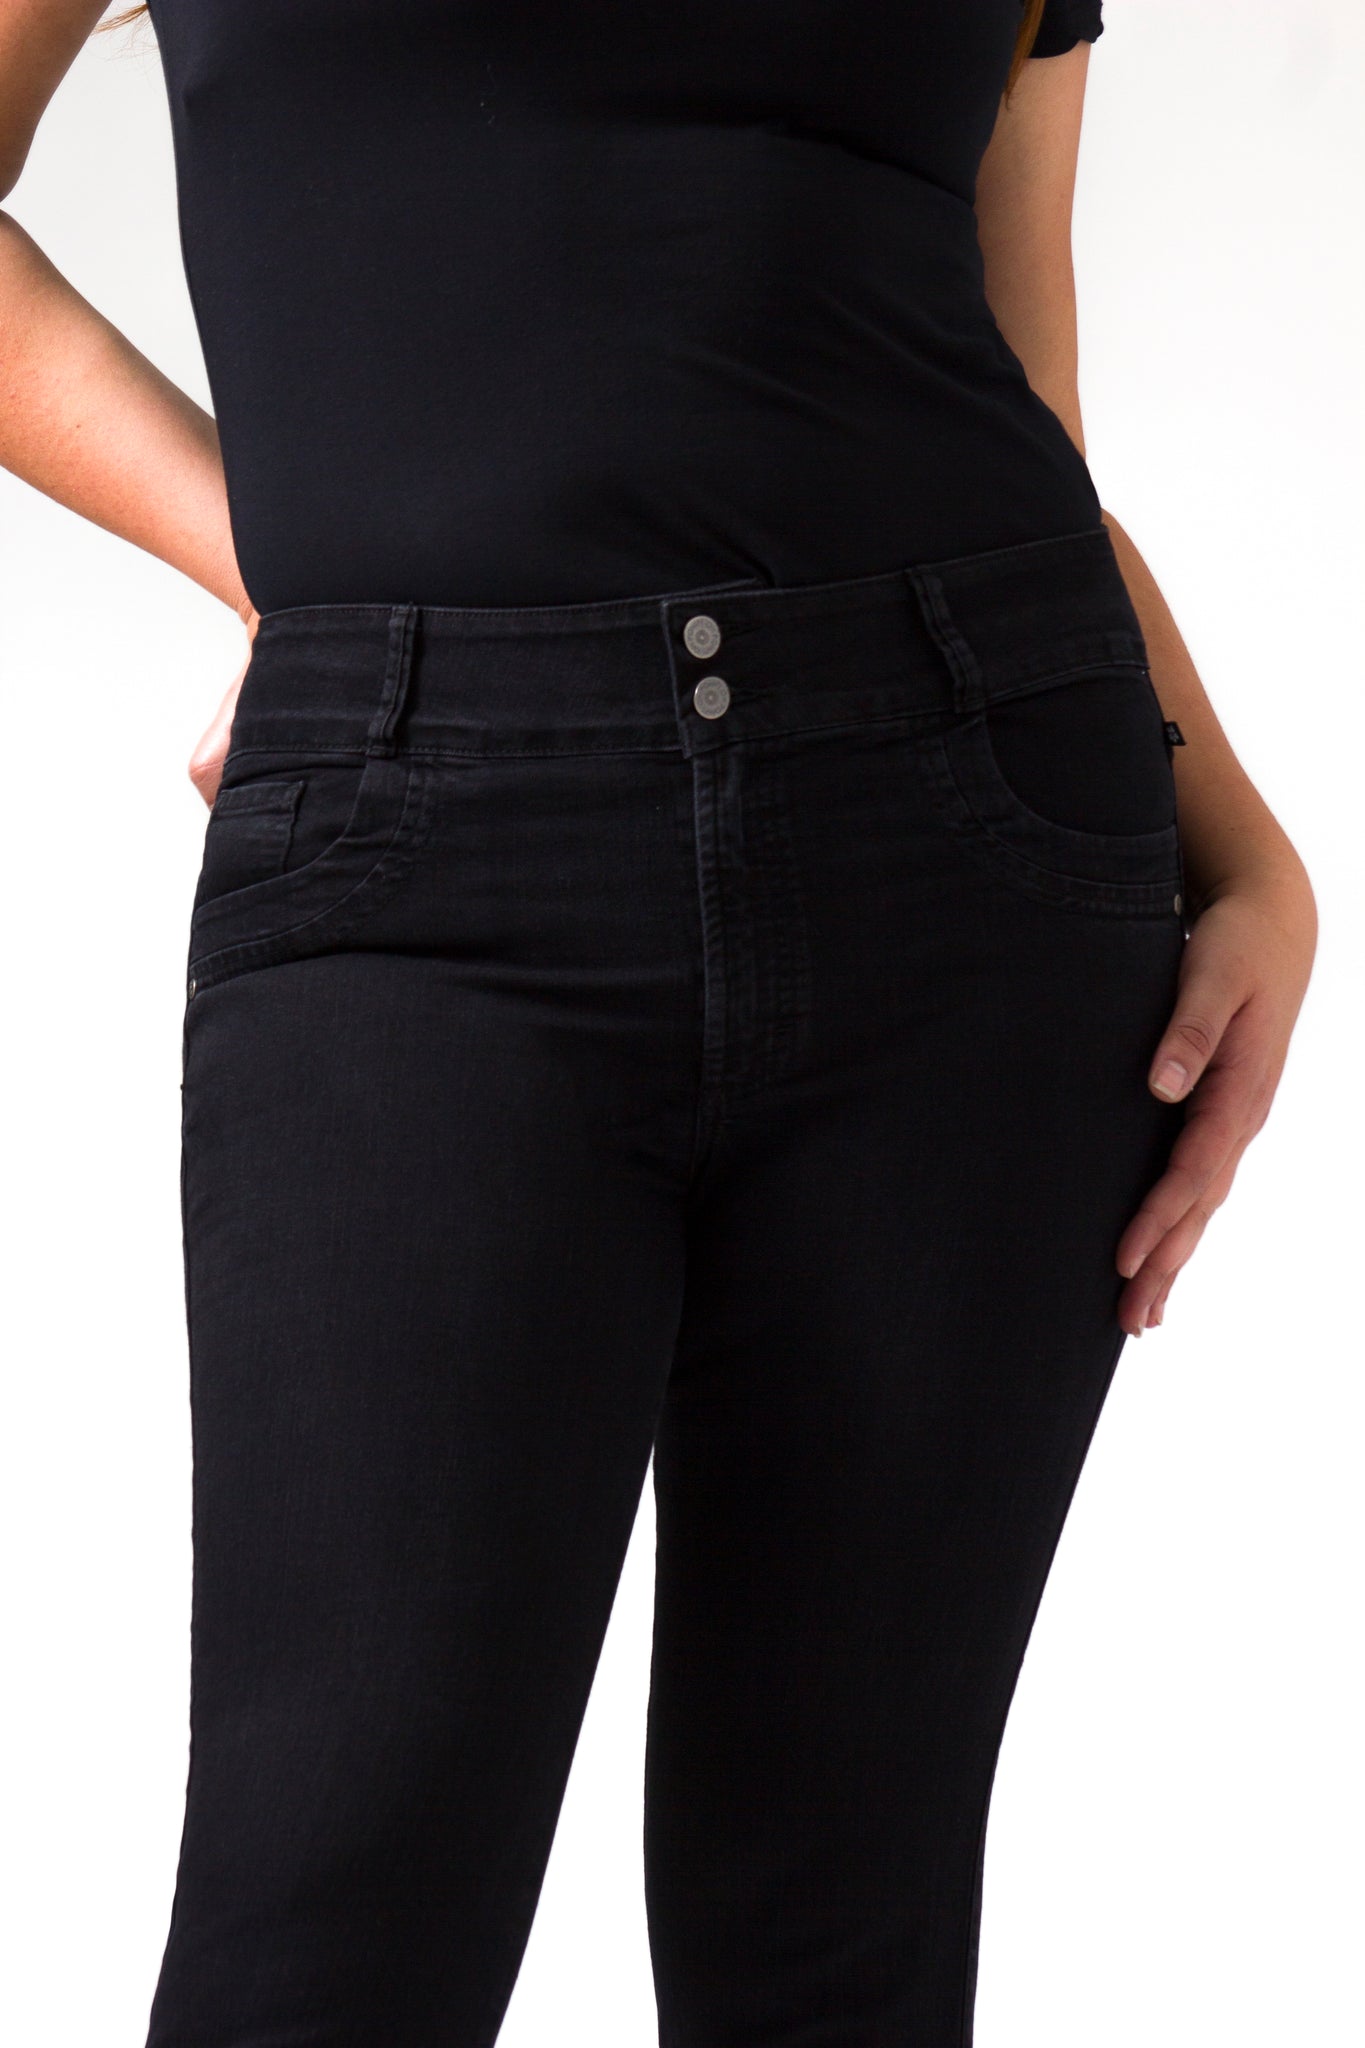 OHPOMP!® Curvy Cintura Alta Skinny Jeans OPE1350